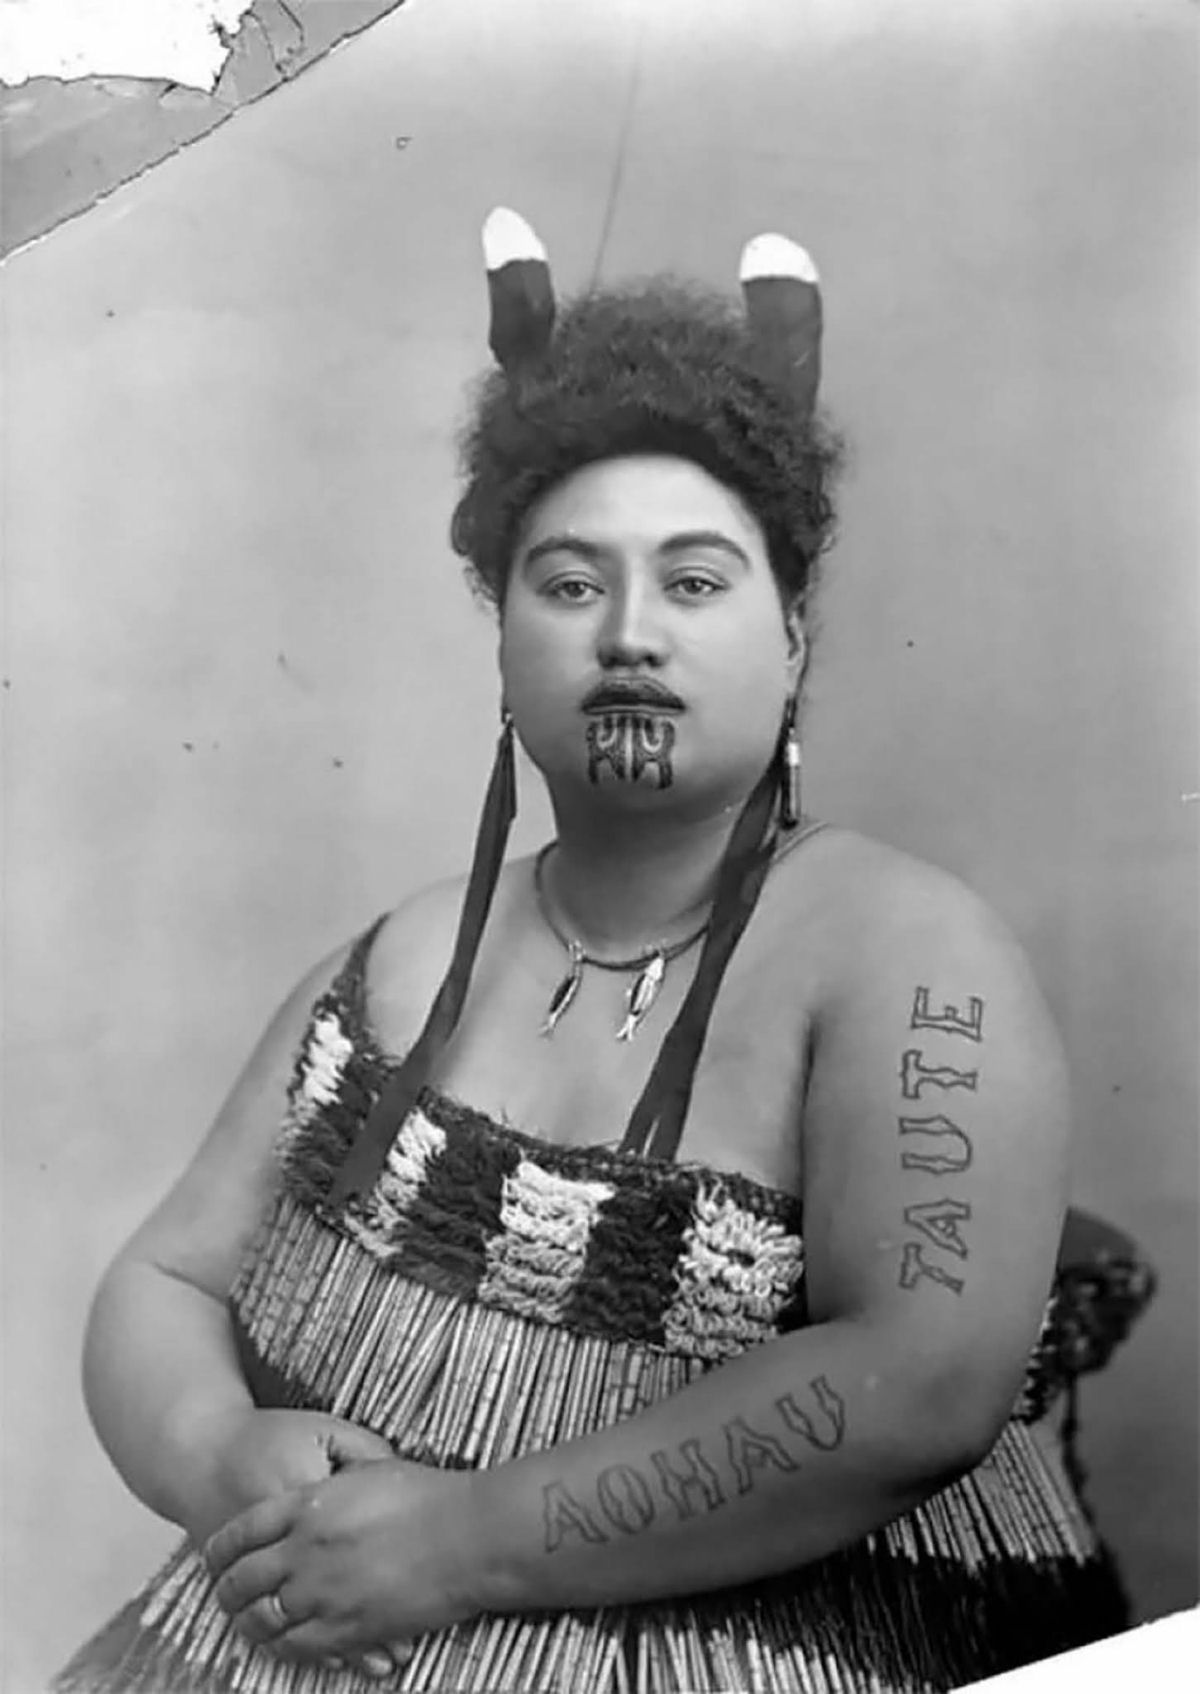 Antigas fotos de Maoris antes das tatuagens tā moko serem proibidas pelos britânicos 31